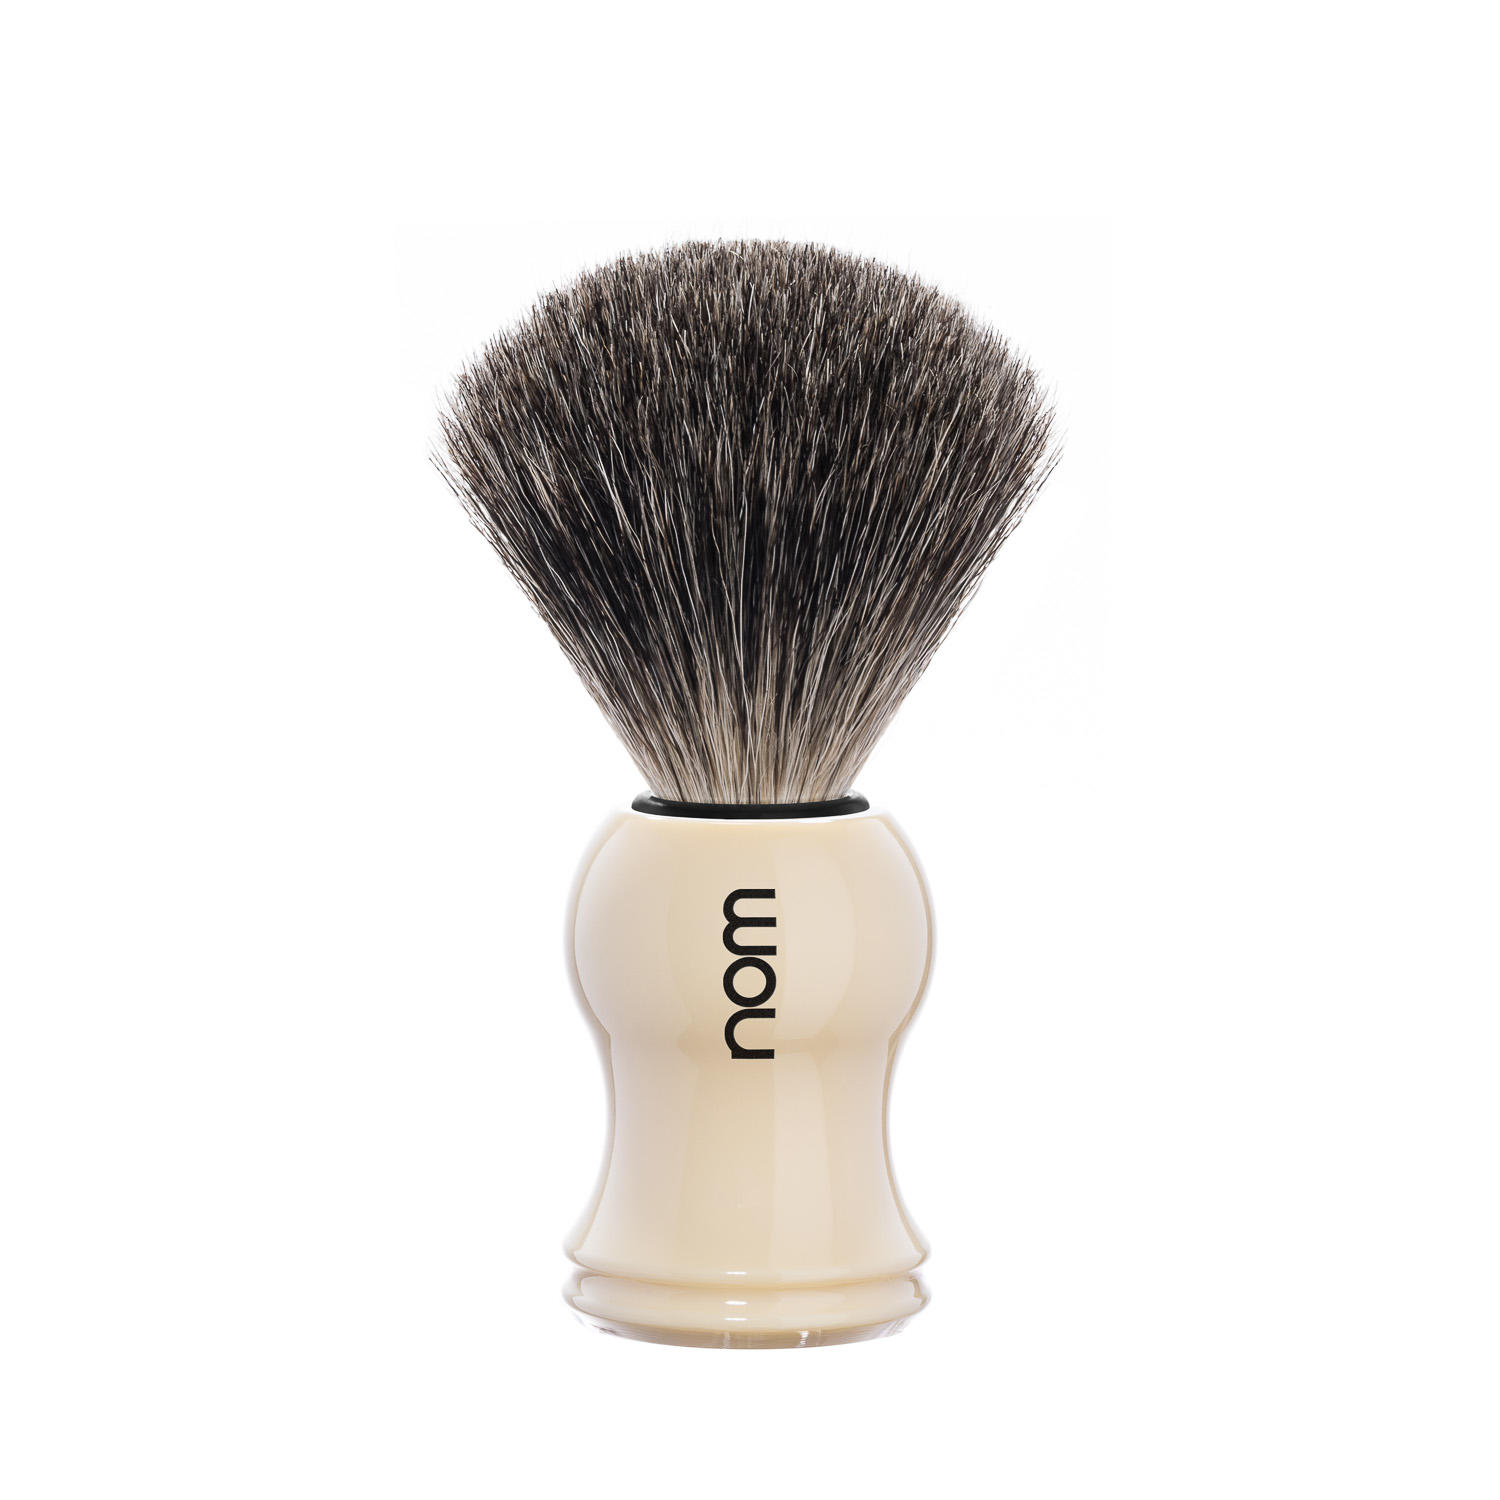 GUSTAV81CR nom GUSTAV, cream, pure badger shaving brush